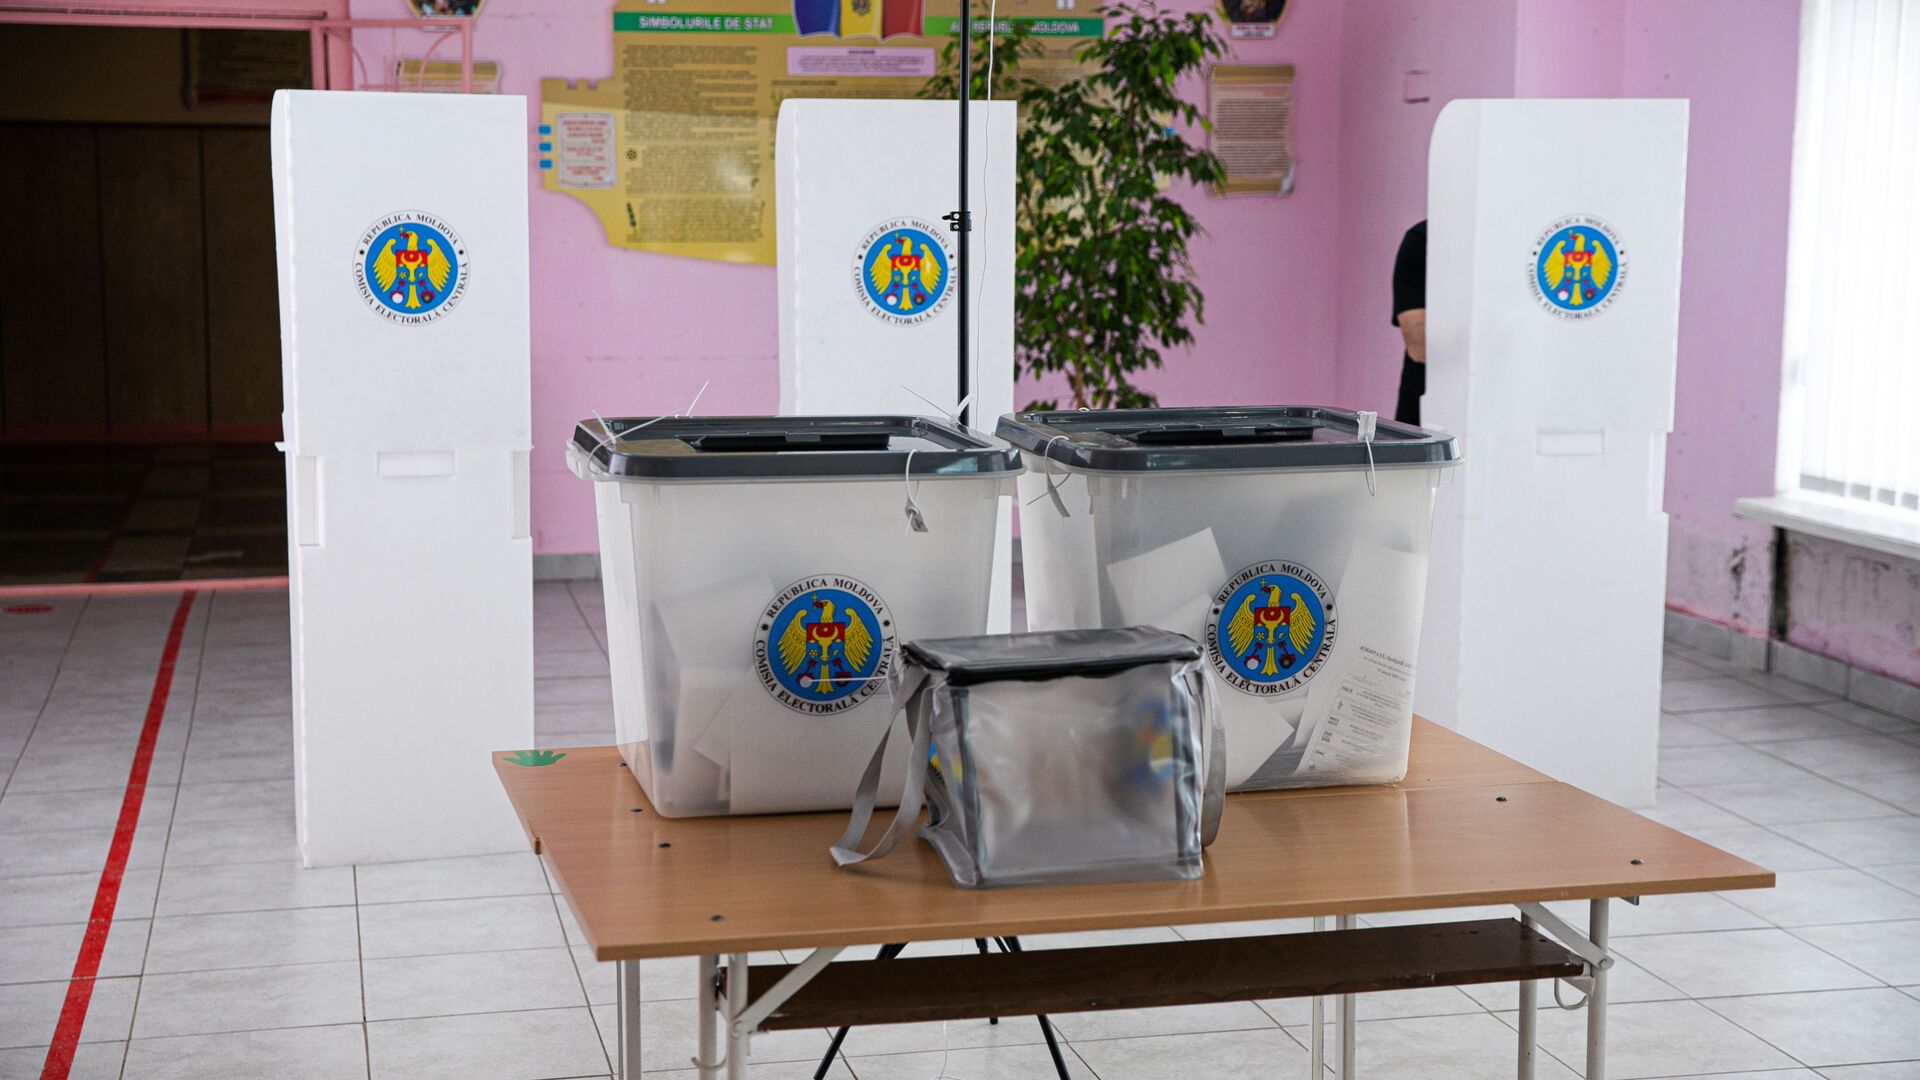 Урны и кабинки для голосования в Молдове  - Sputnik Молдова, 1920, 06.11.2021